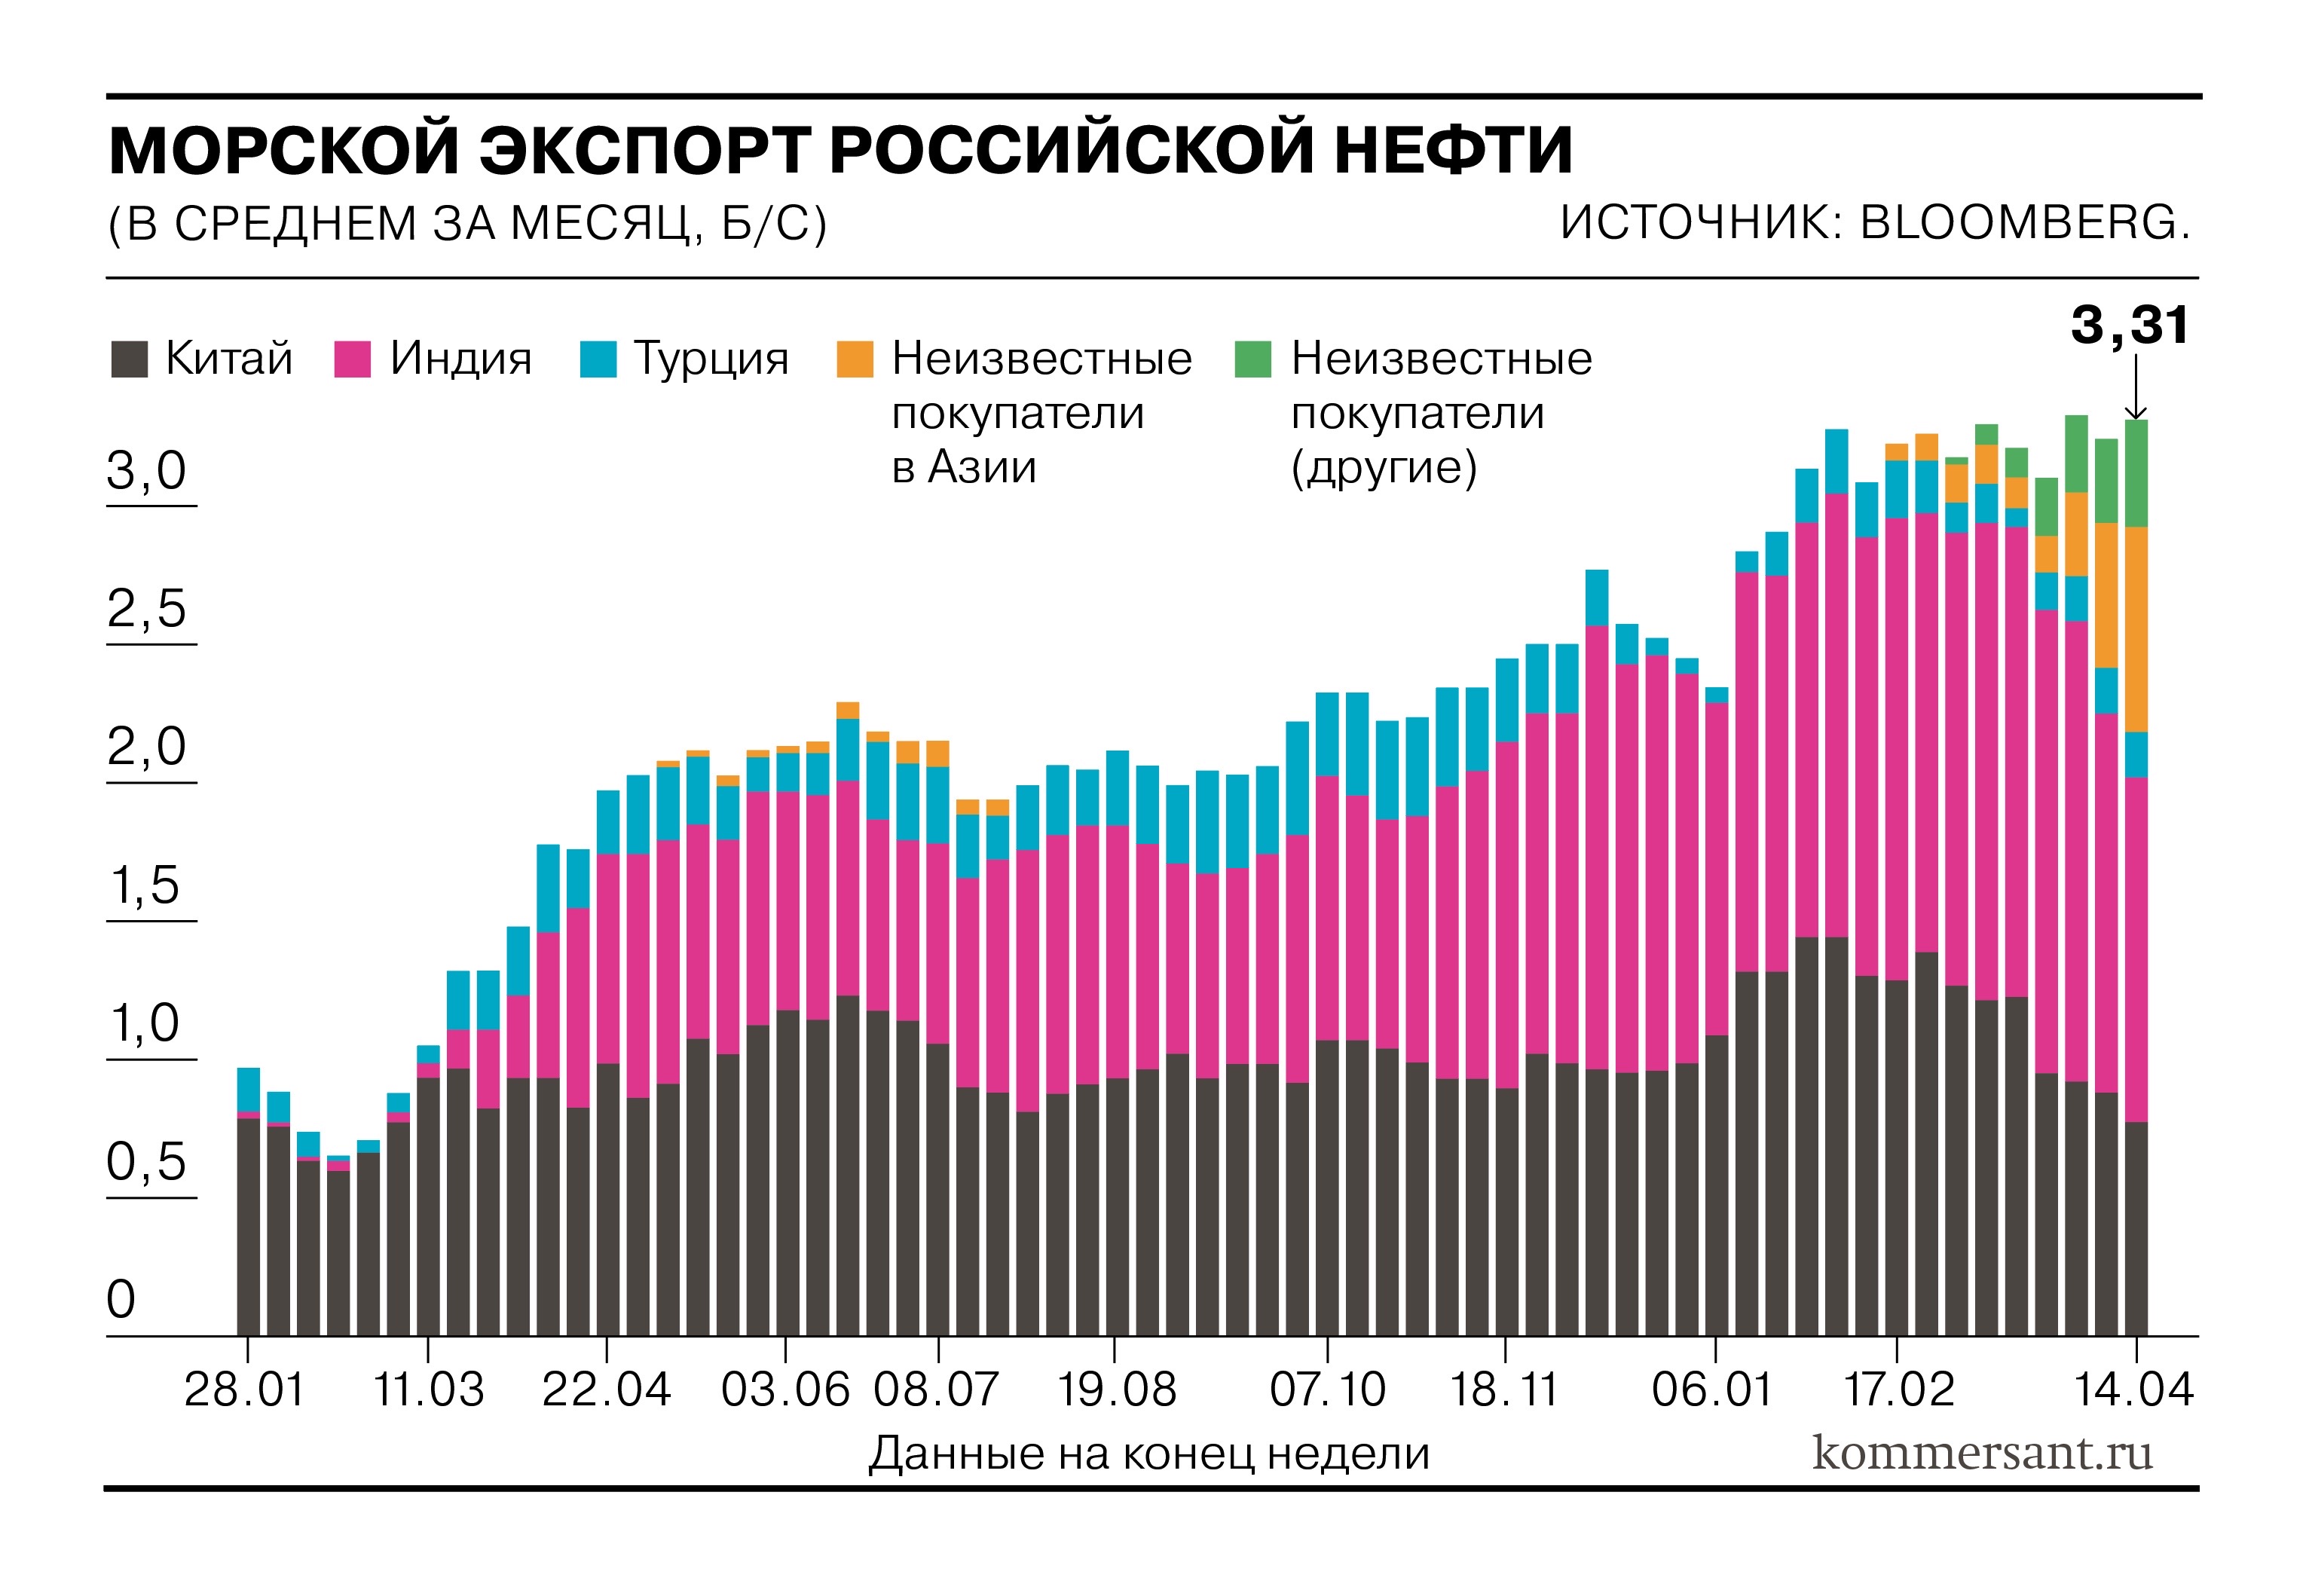 Как растет морской экспорт сырой российской нефти